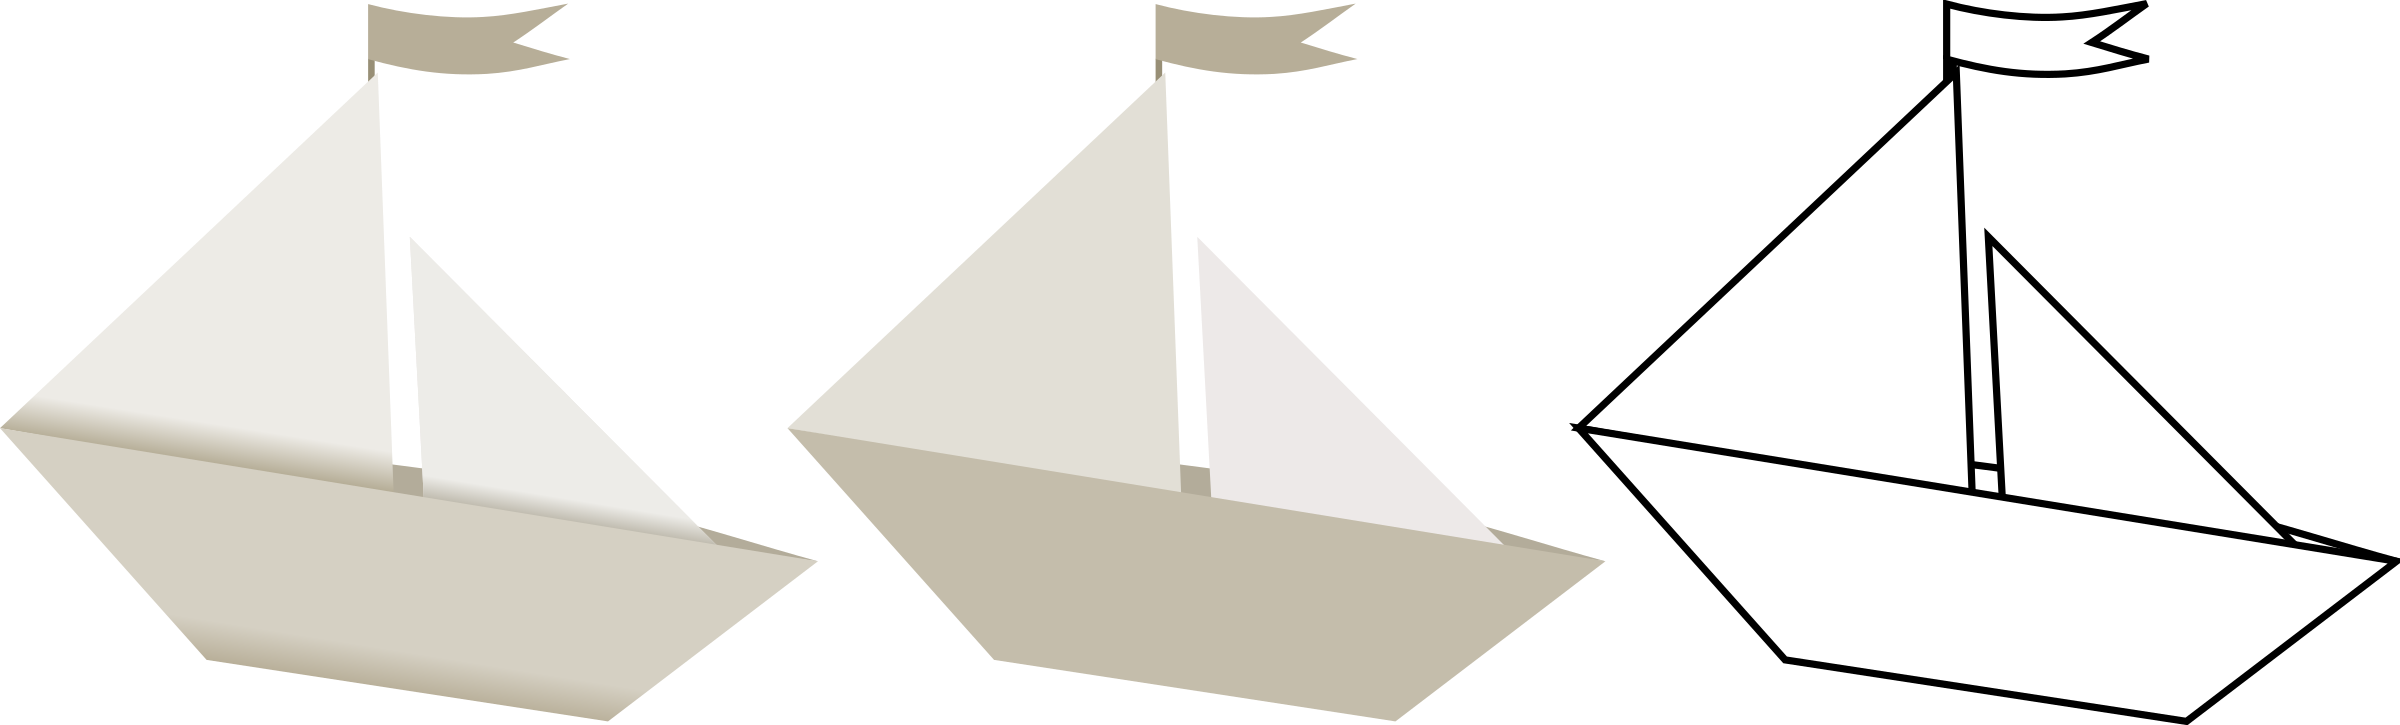 clipart paper sailboat